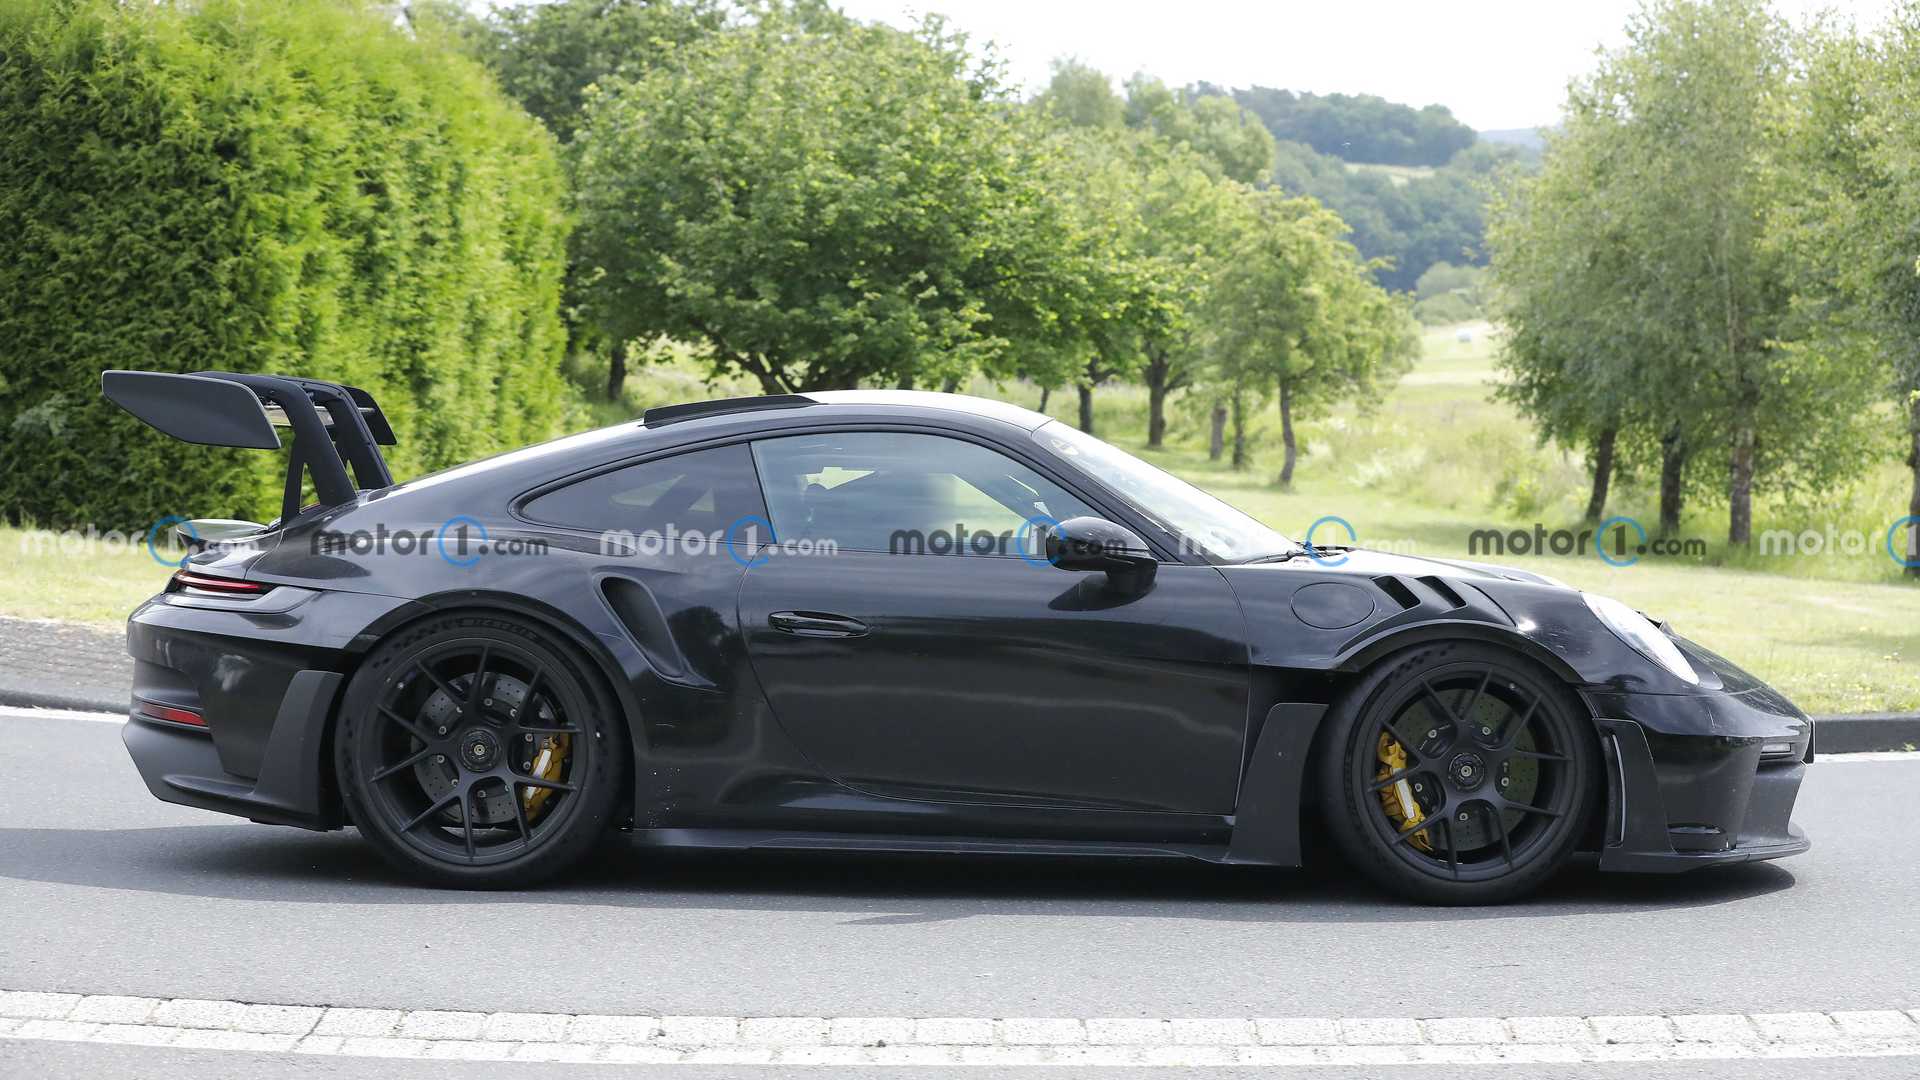 Imágenes espía Porsche 911 GT3 RS